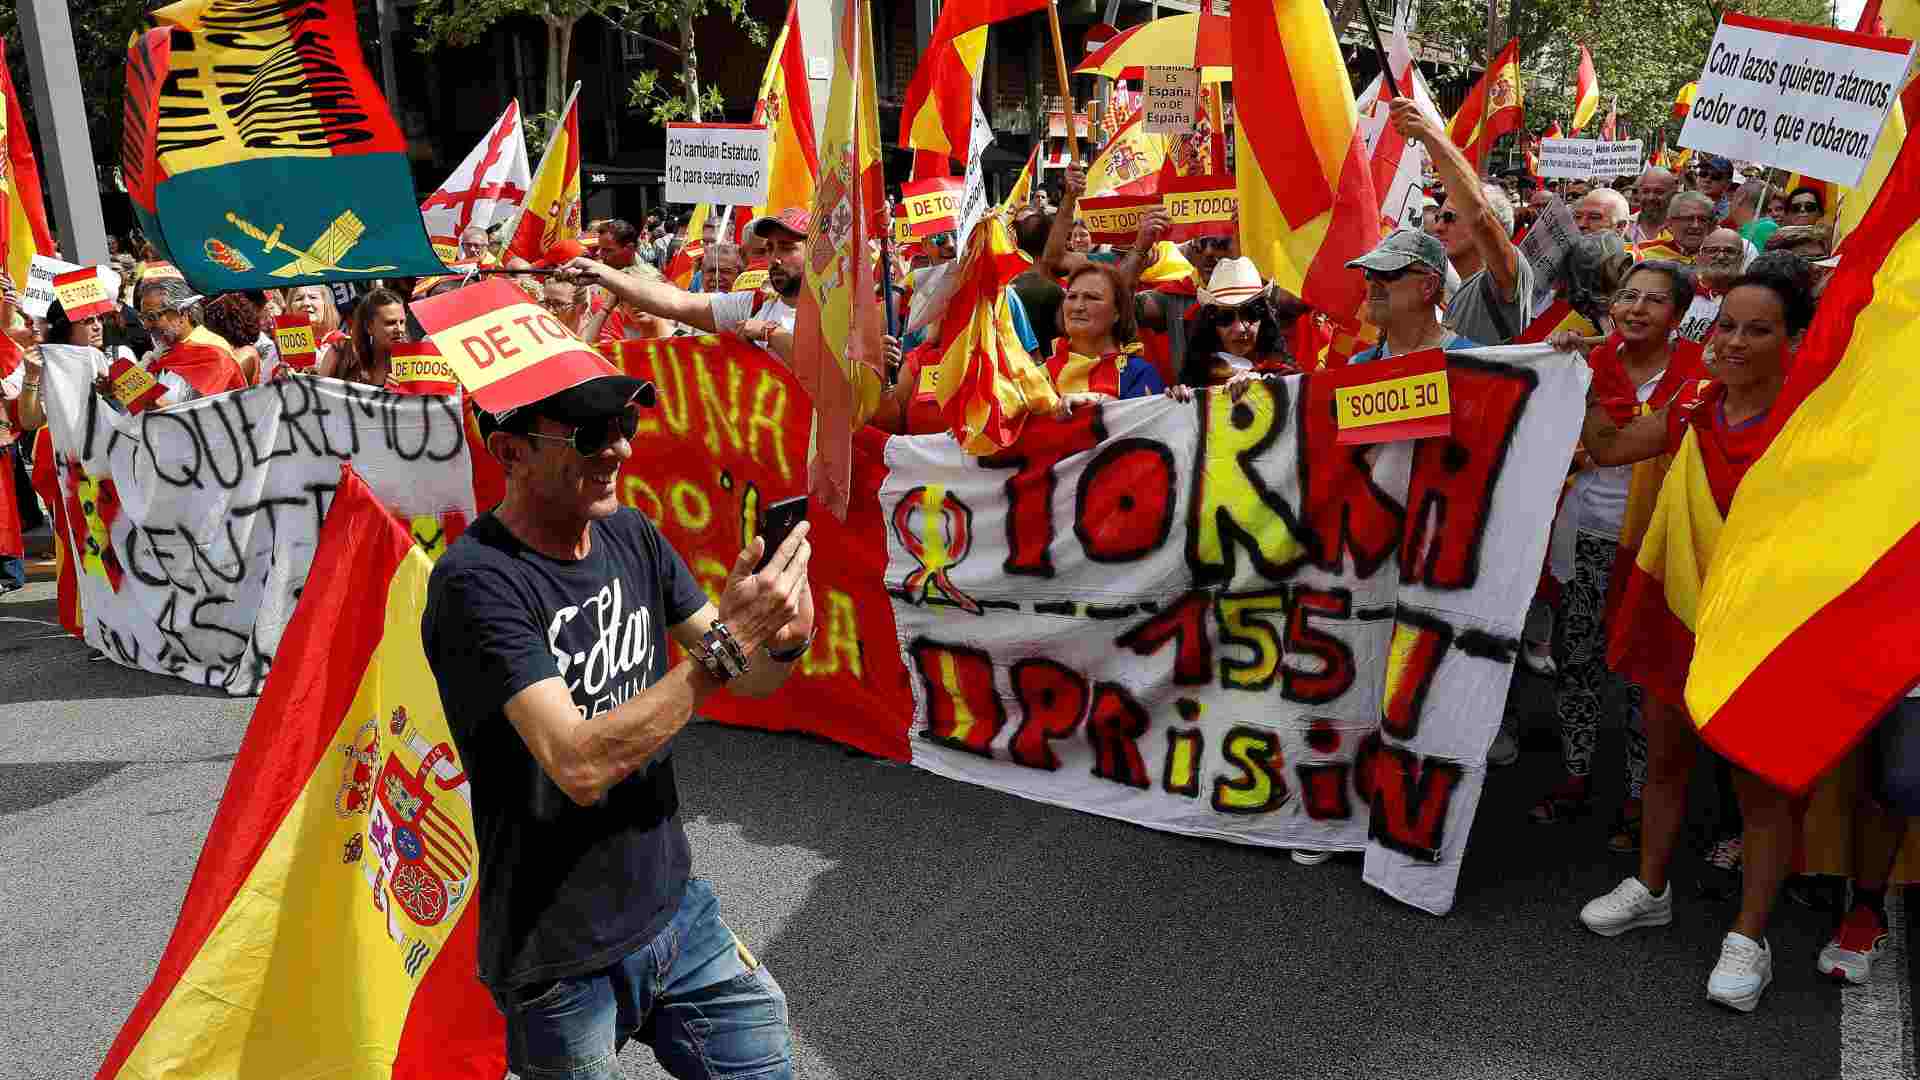 Tensión en Barcelona al coincidir una manifestación por la unidad de España con una independentista